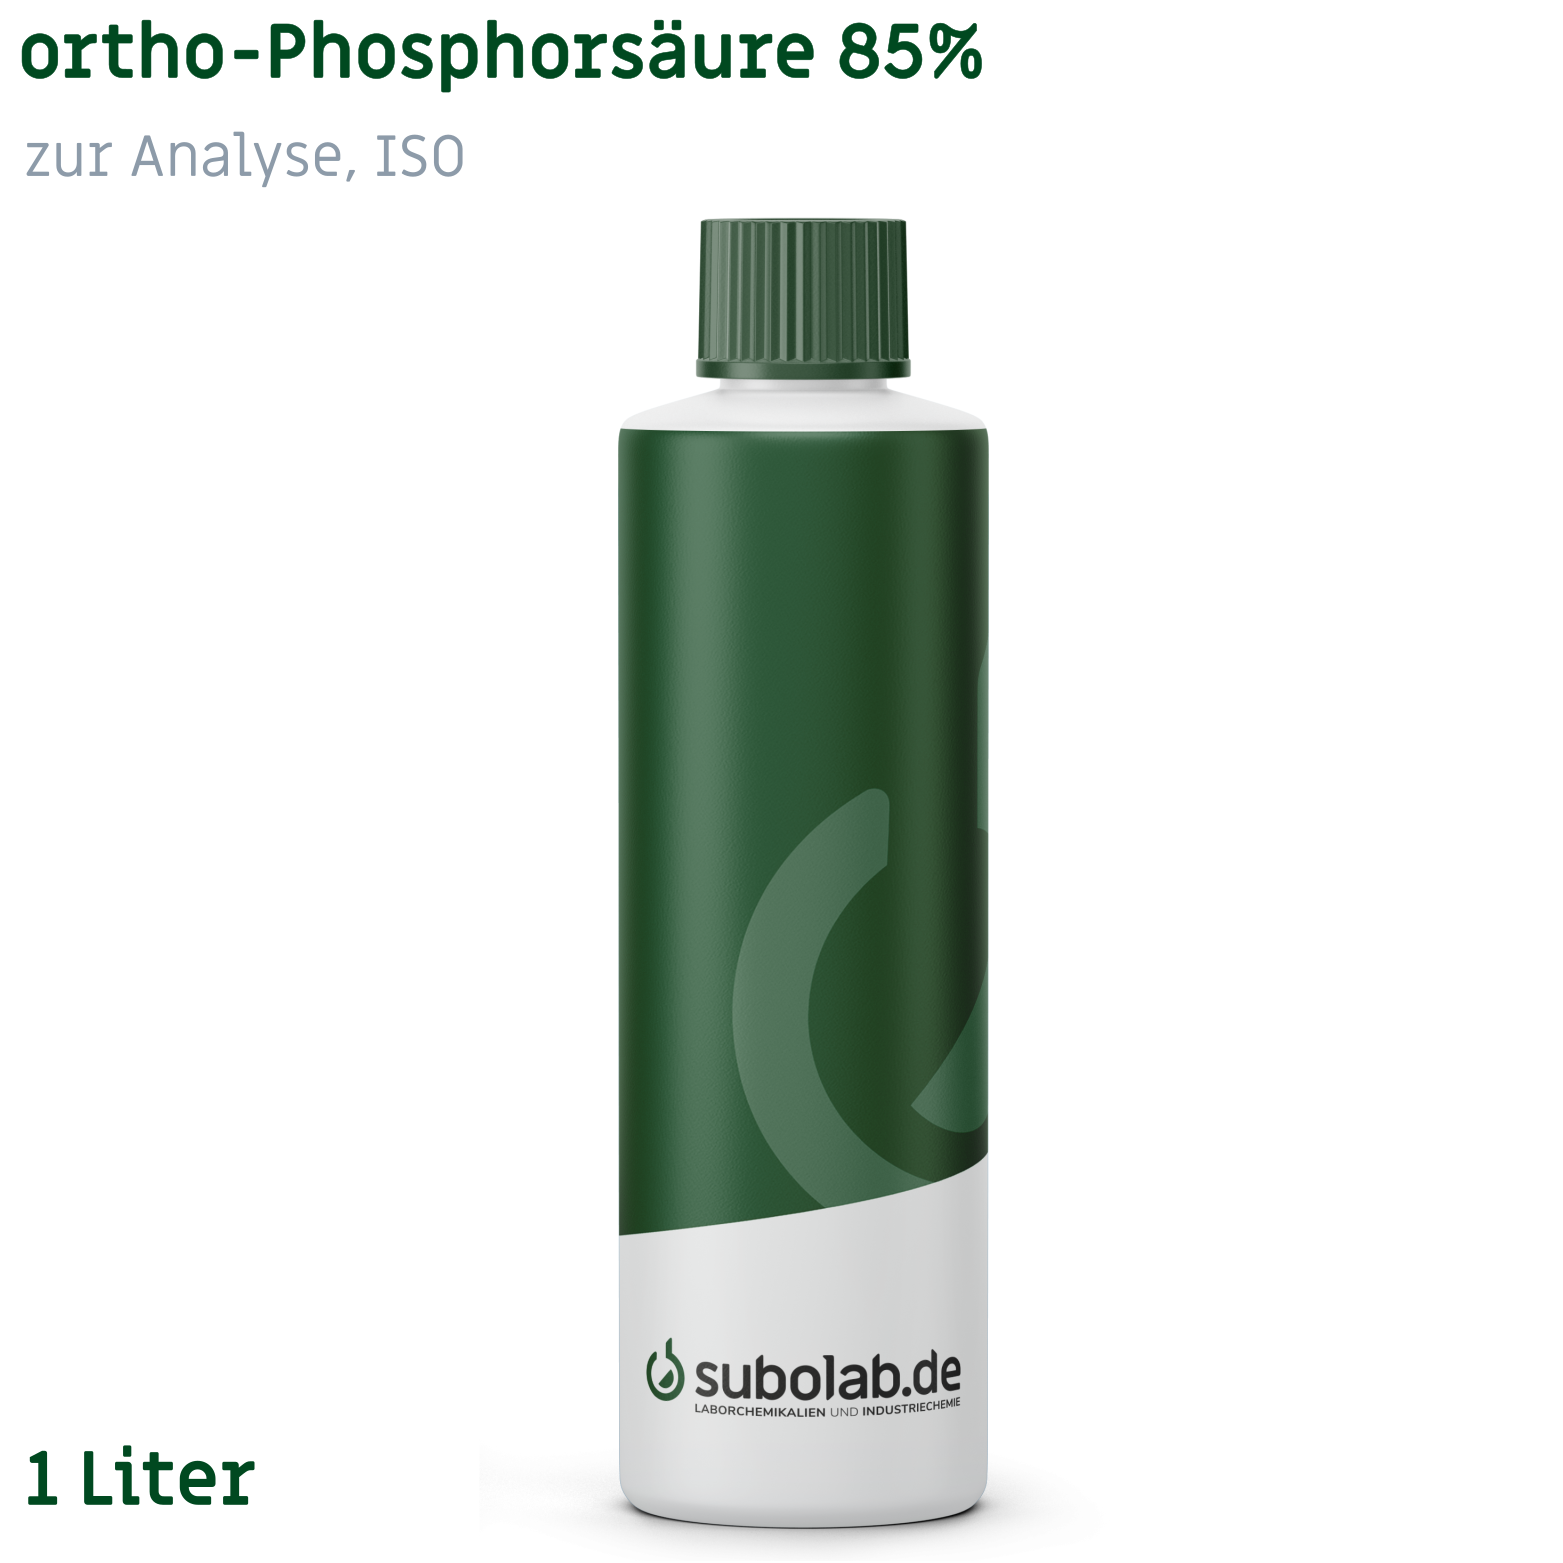 Bild von ortho-Phosphorsäure 85% zur Analyse, ISO (1 Liter)